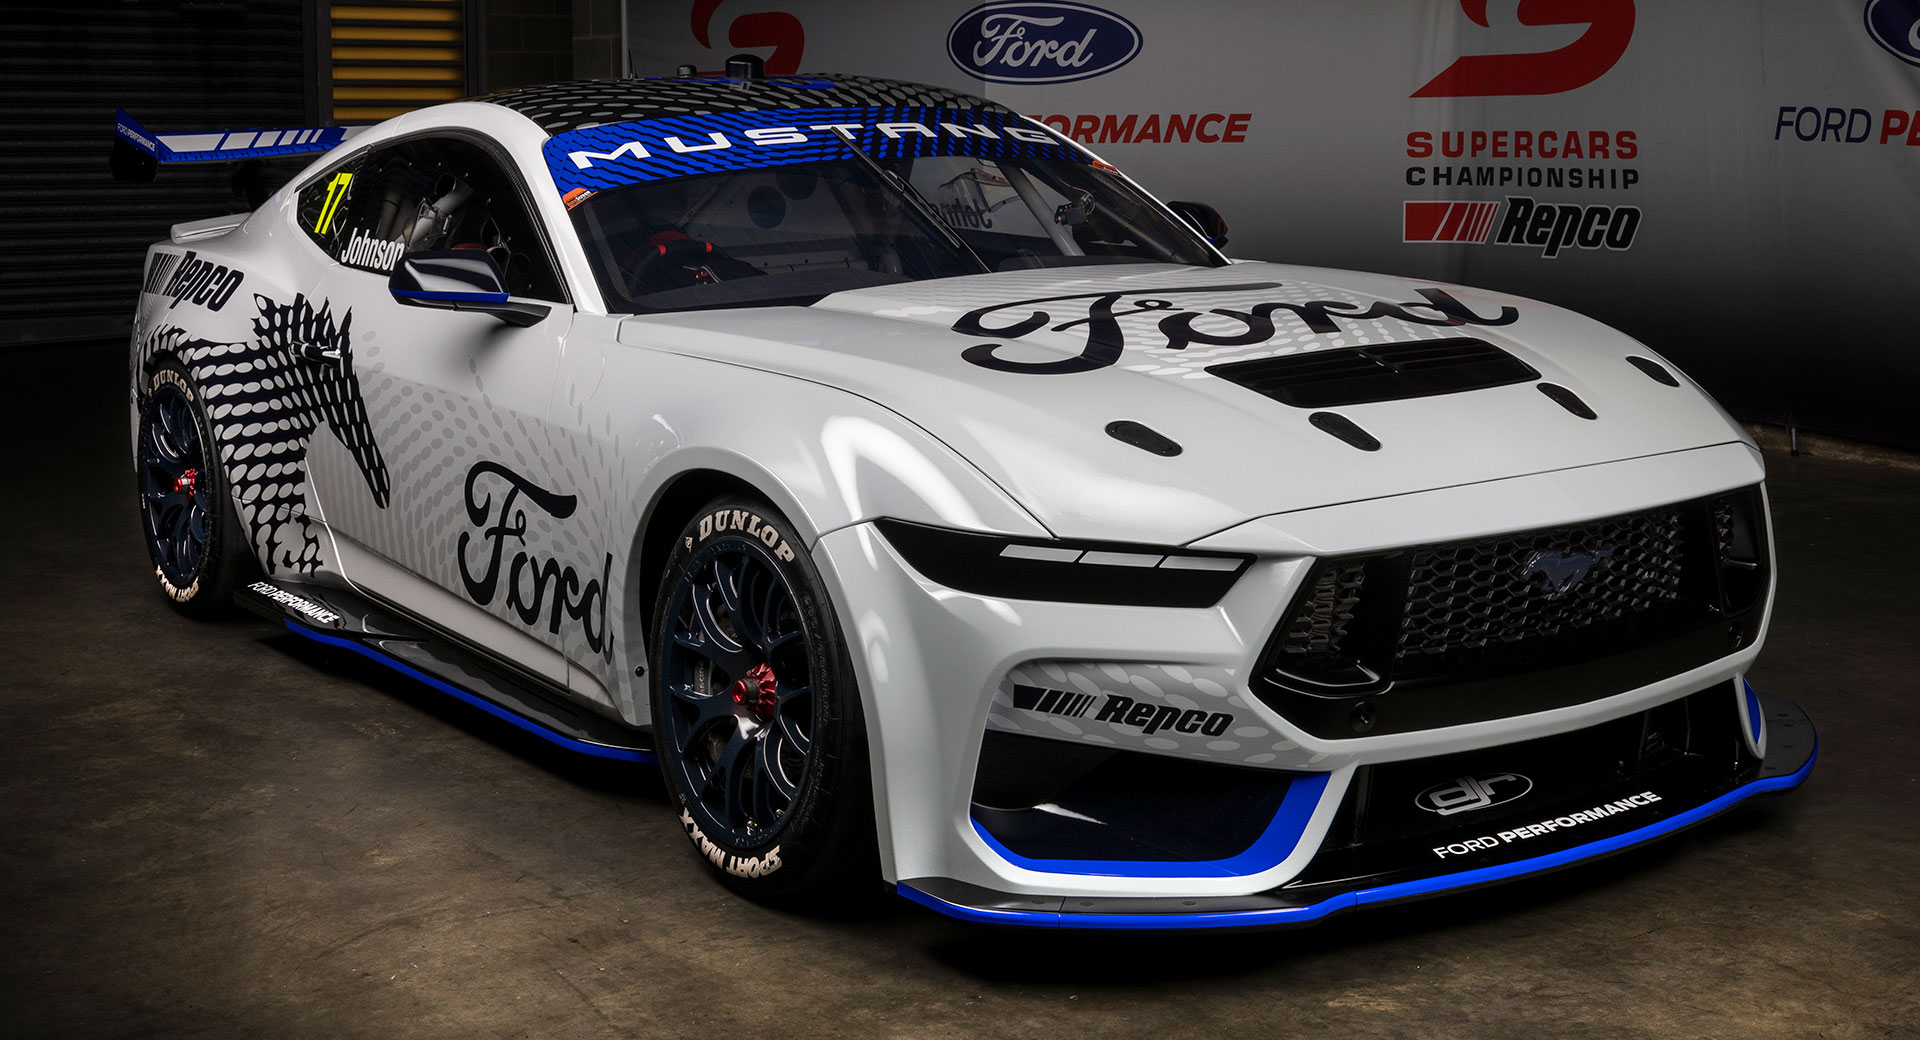 La Ford Mustang GT de septième génération dévoilée pour le championnat australien des supercars